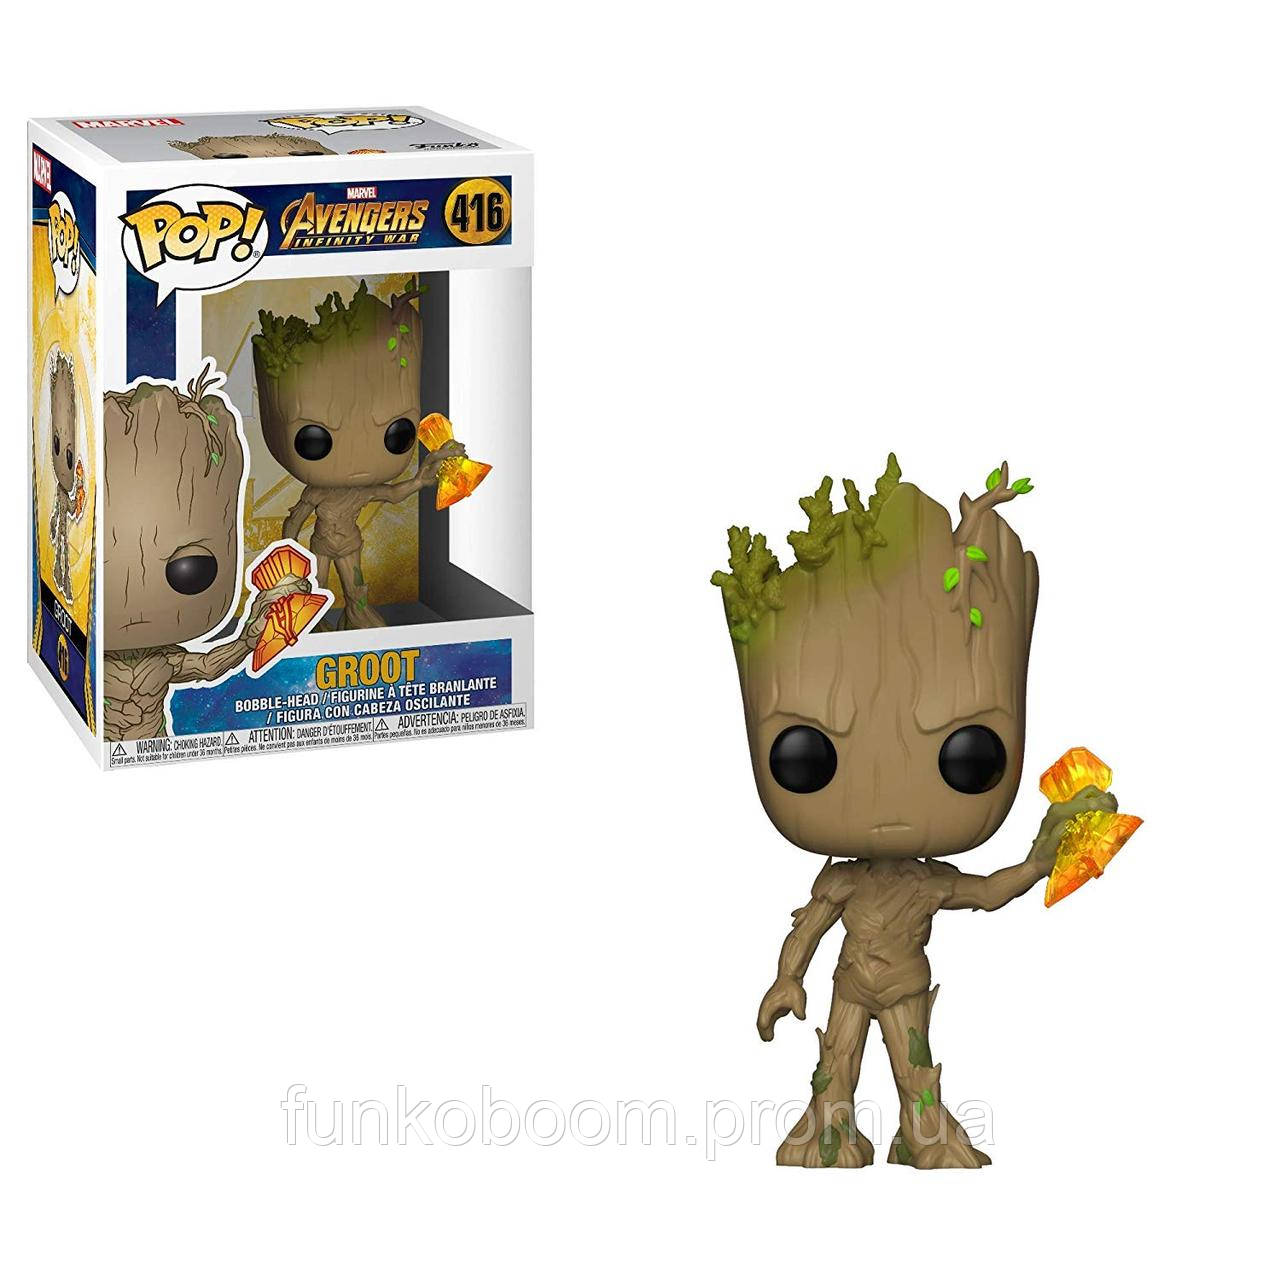 Groot with Stormbreaker #416 